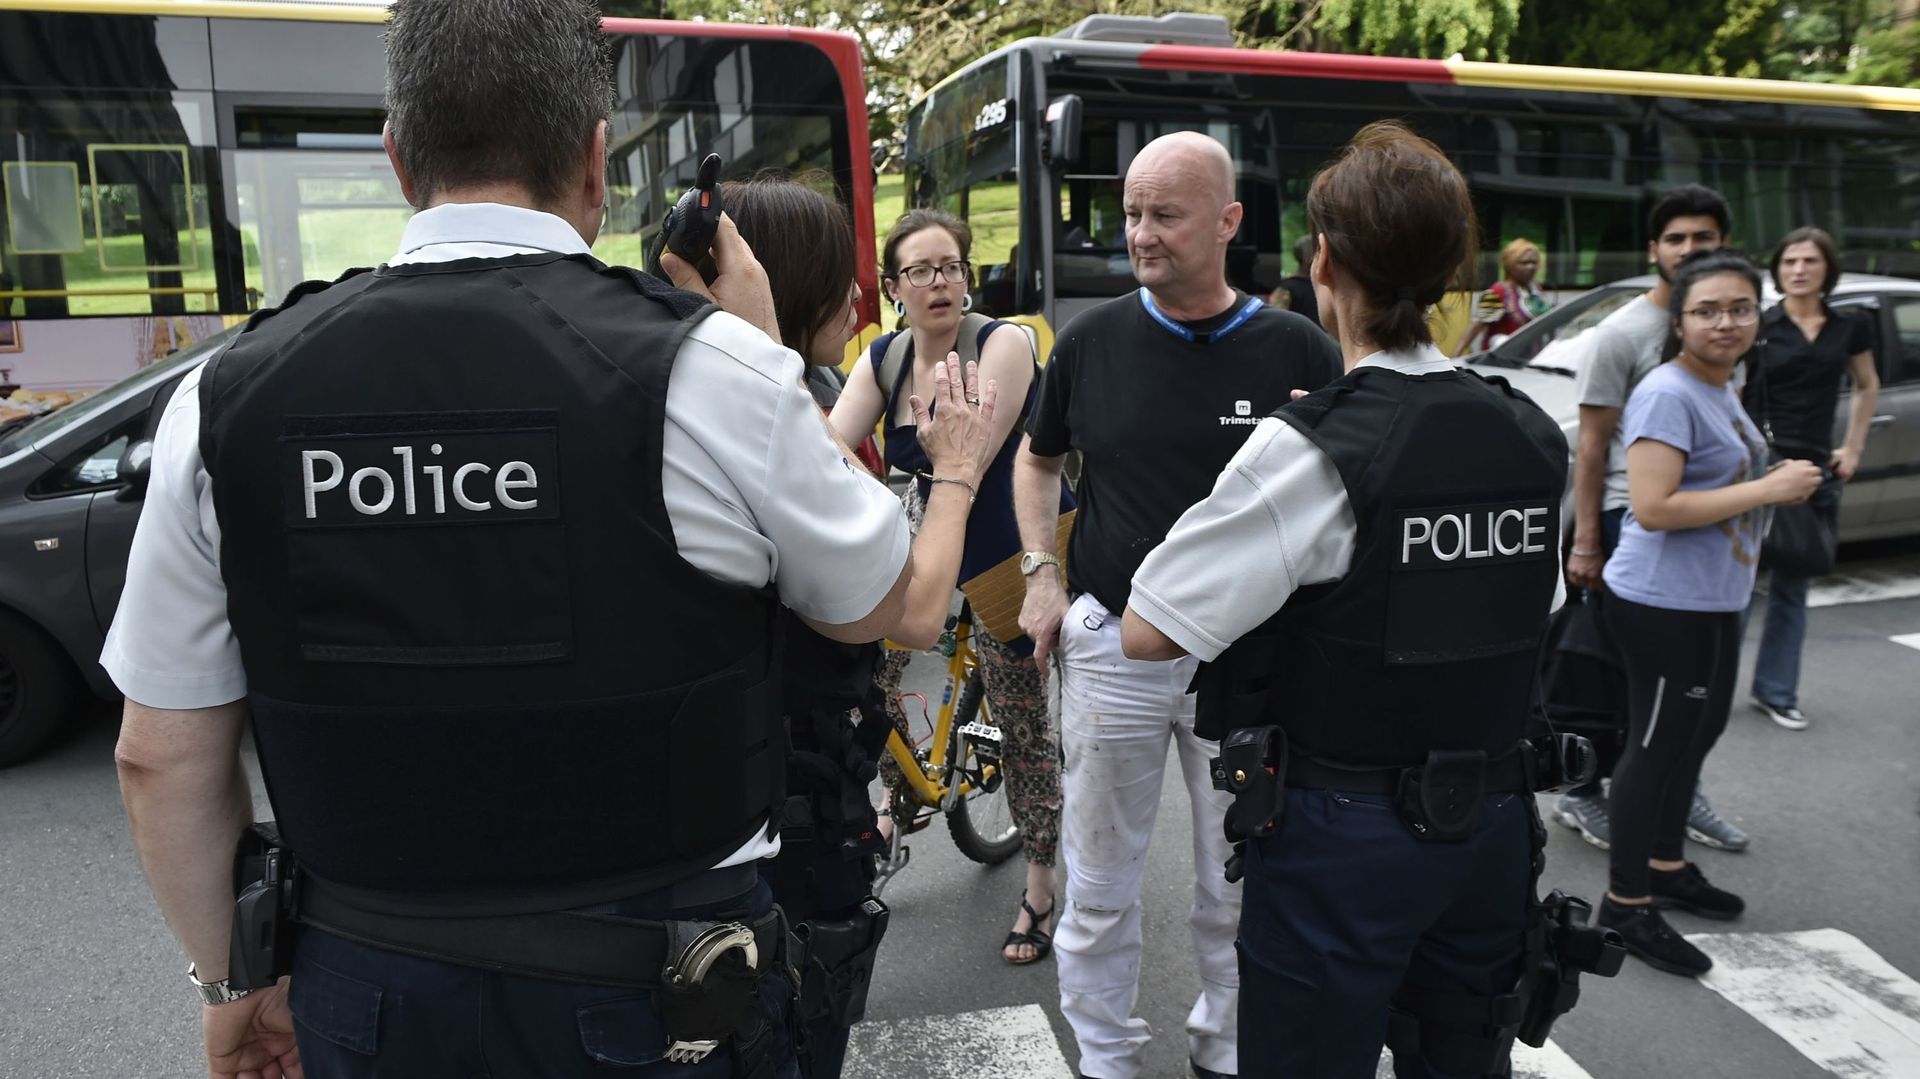 Fusillade à Liège: récapitulatif des attaques terroristes ayant visé la police ces dernières années